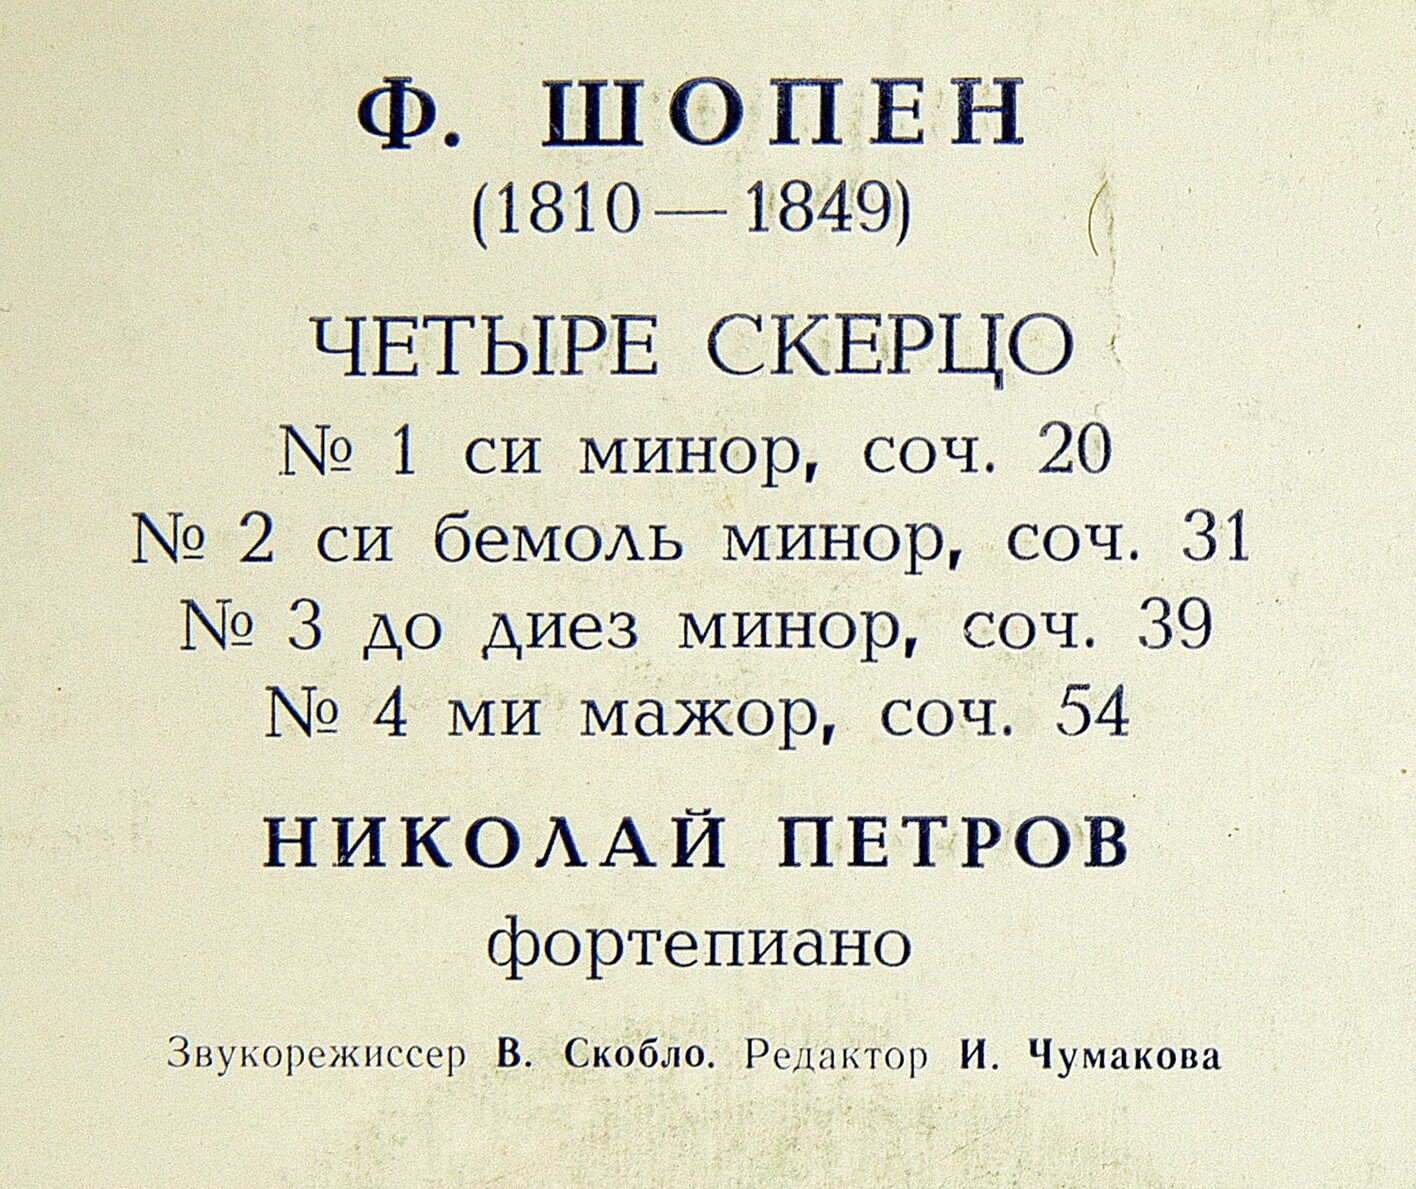 Ф. ШОПЕН (1810—1849): Четыре скерцо для ф-но (Н. Петров)